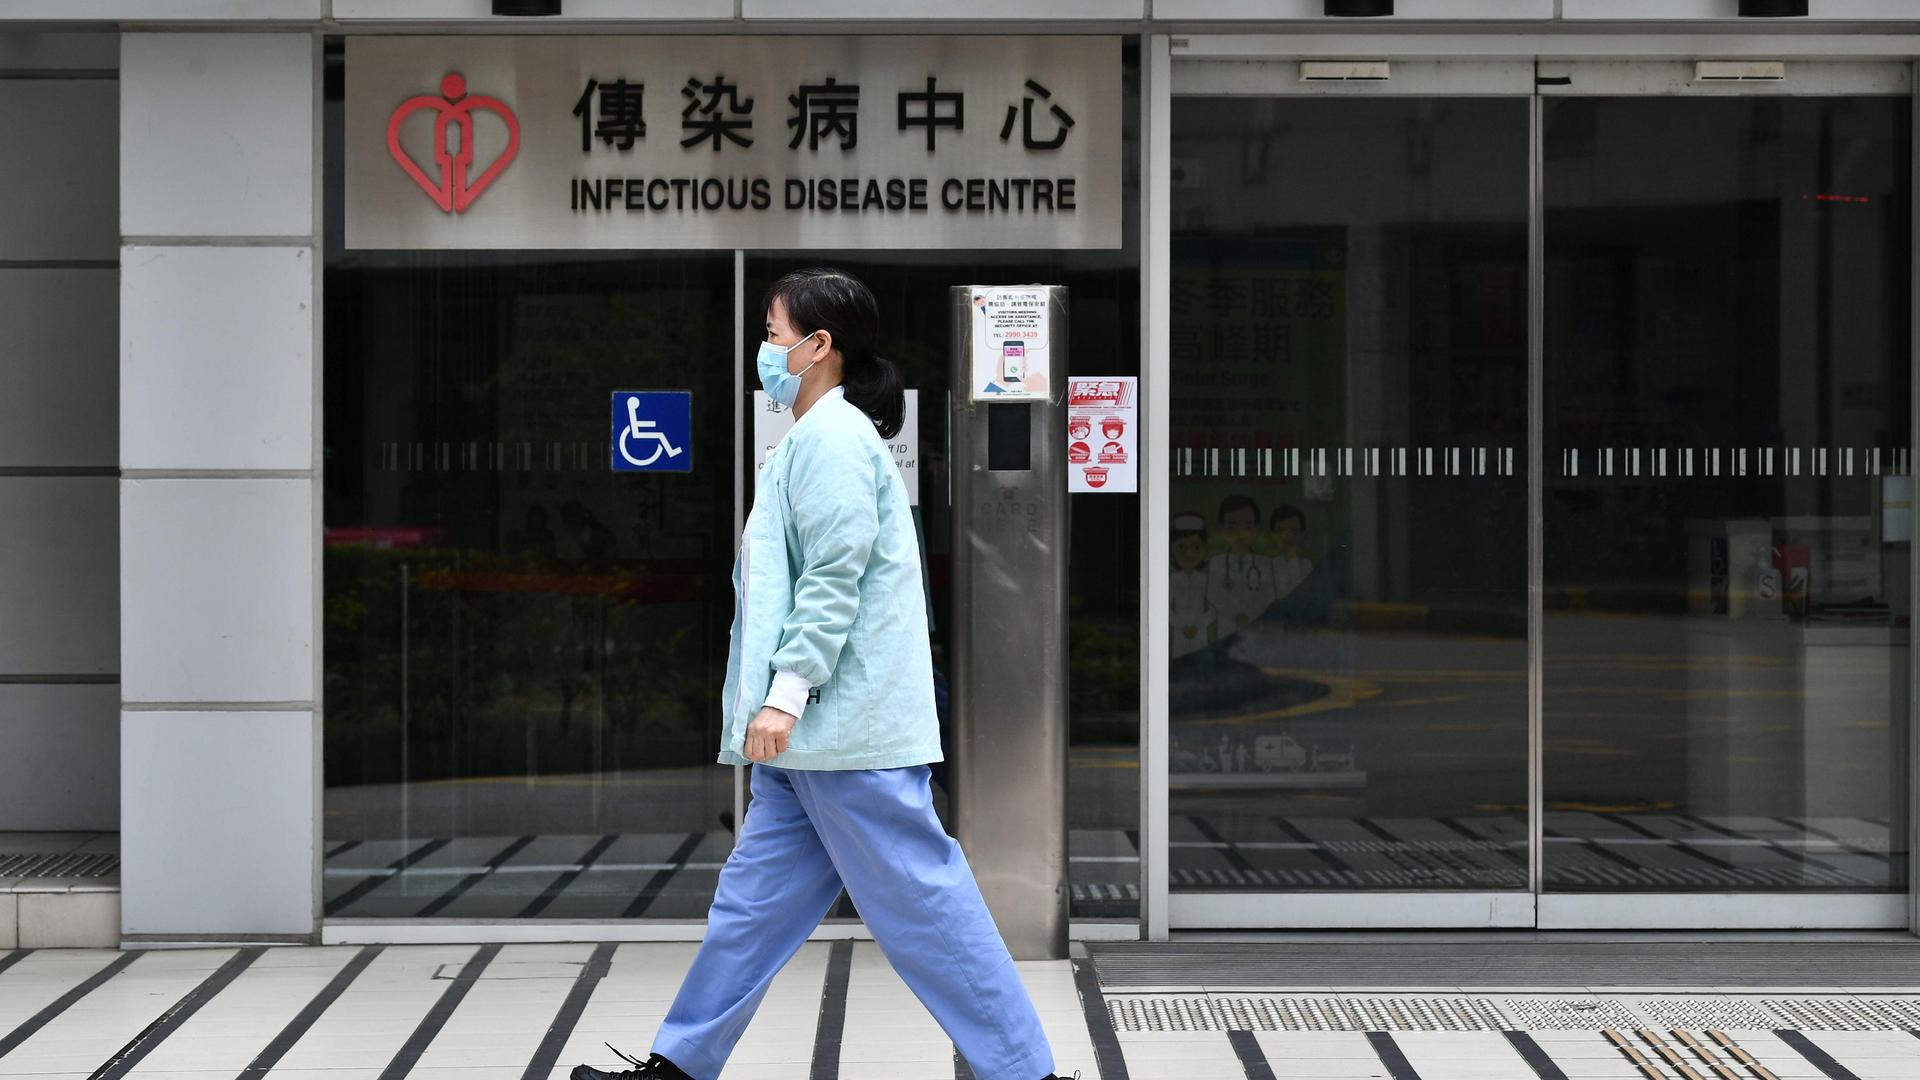 La victime est un octogénaire de Hong Kong qui s'était rendu en janvier à Wuhan, épicentre du virus, avant de retourner dans le territoire semi-autonome le 23 janvier à bord d'un train express.